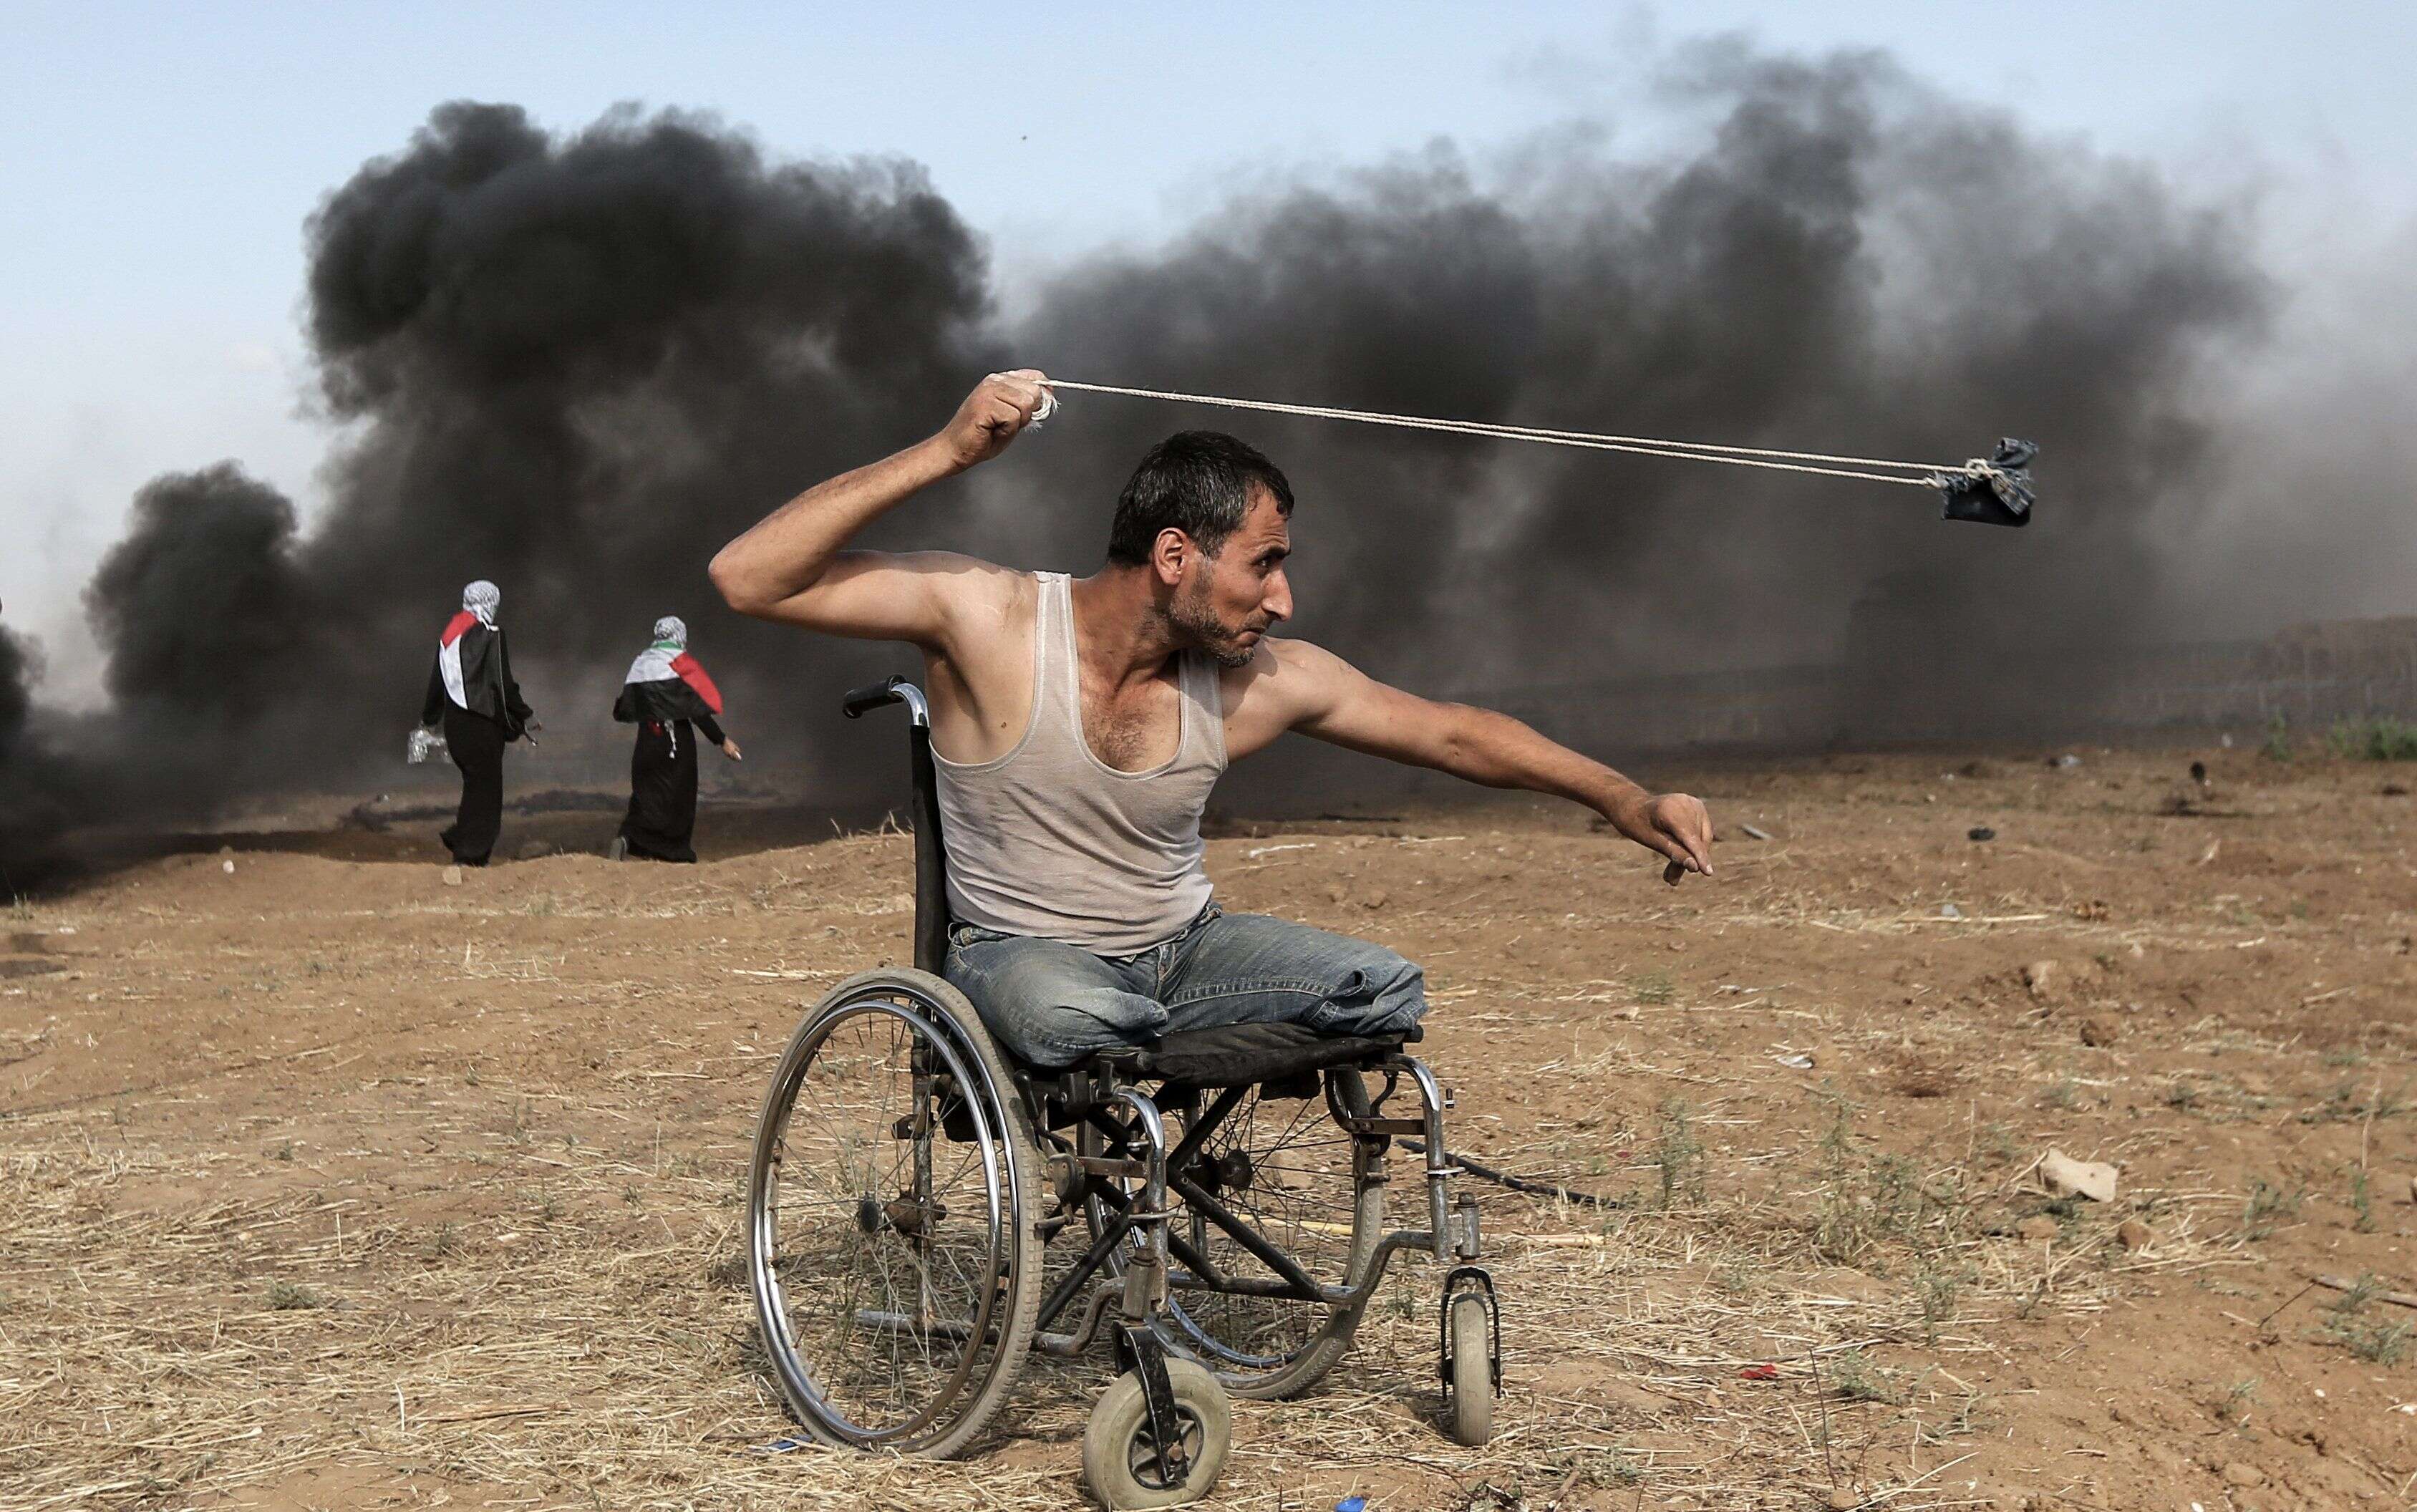 11 mai - Un Palestinien de 29 ans, Saber al-Ashkar, lançant des pierres lors d'affrontements avec les forces israéliennes le long de la frontière avec la bande de Gaza, à l'est de la ville de Gaza, alors que les Palestiniens manifestent pour le droit de retourner dans leur patrie historique.